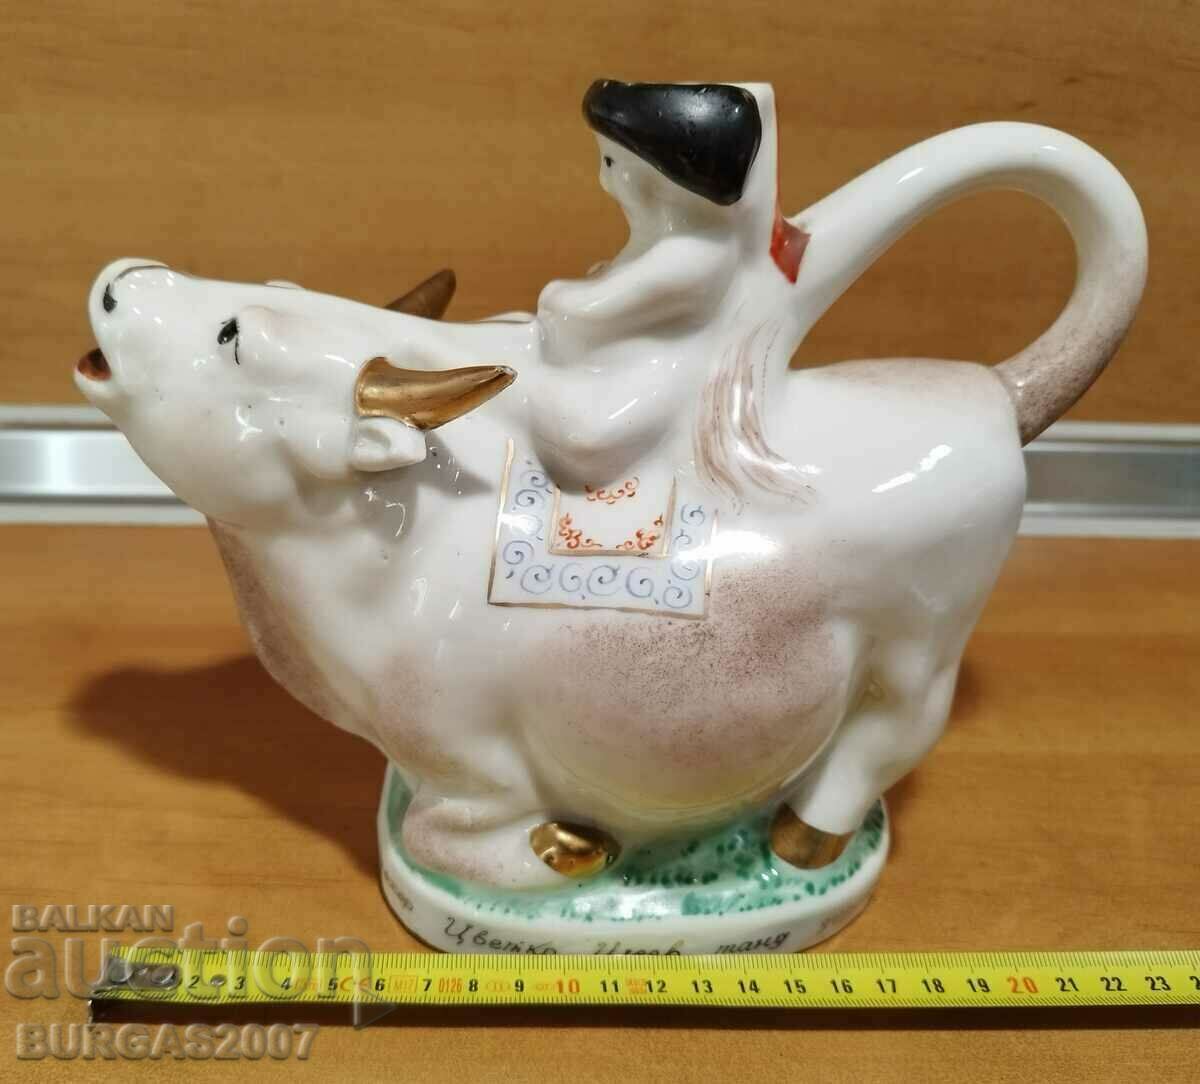 Old porcelain figure, teapot, cow, 1964.